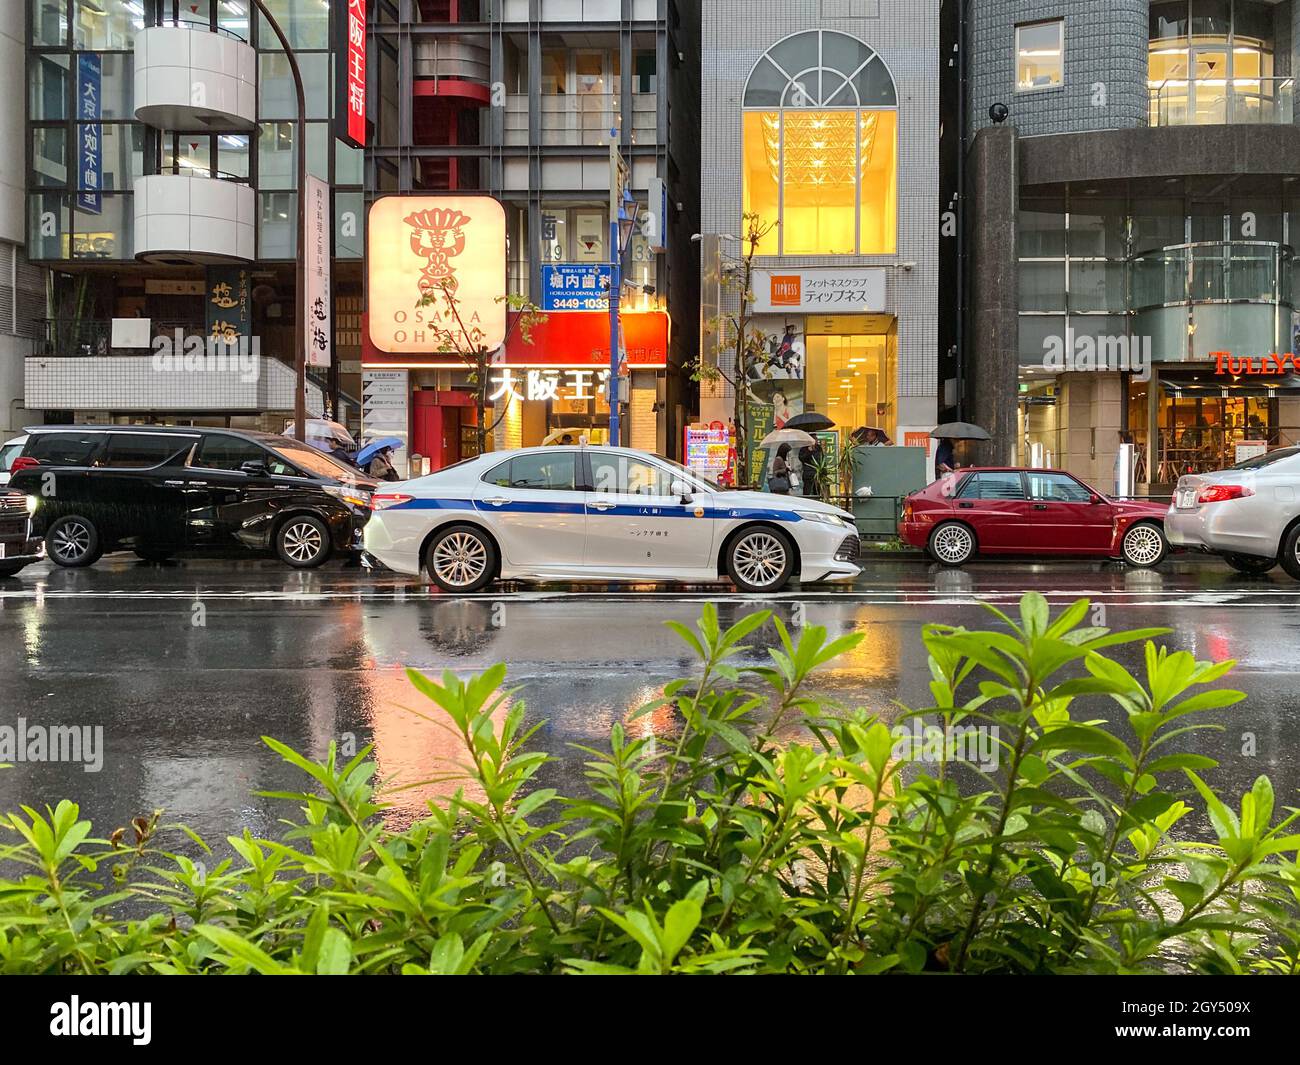 Tokio, Japón - 22November 2019: Toyota Police Car en la calle de Tokio Foto de stock